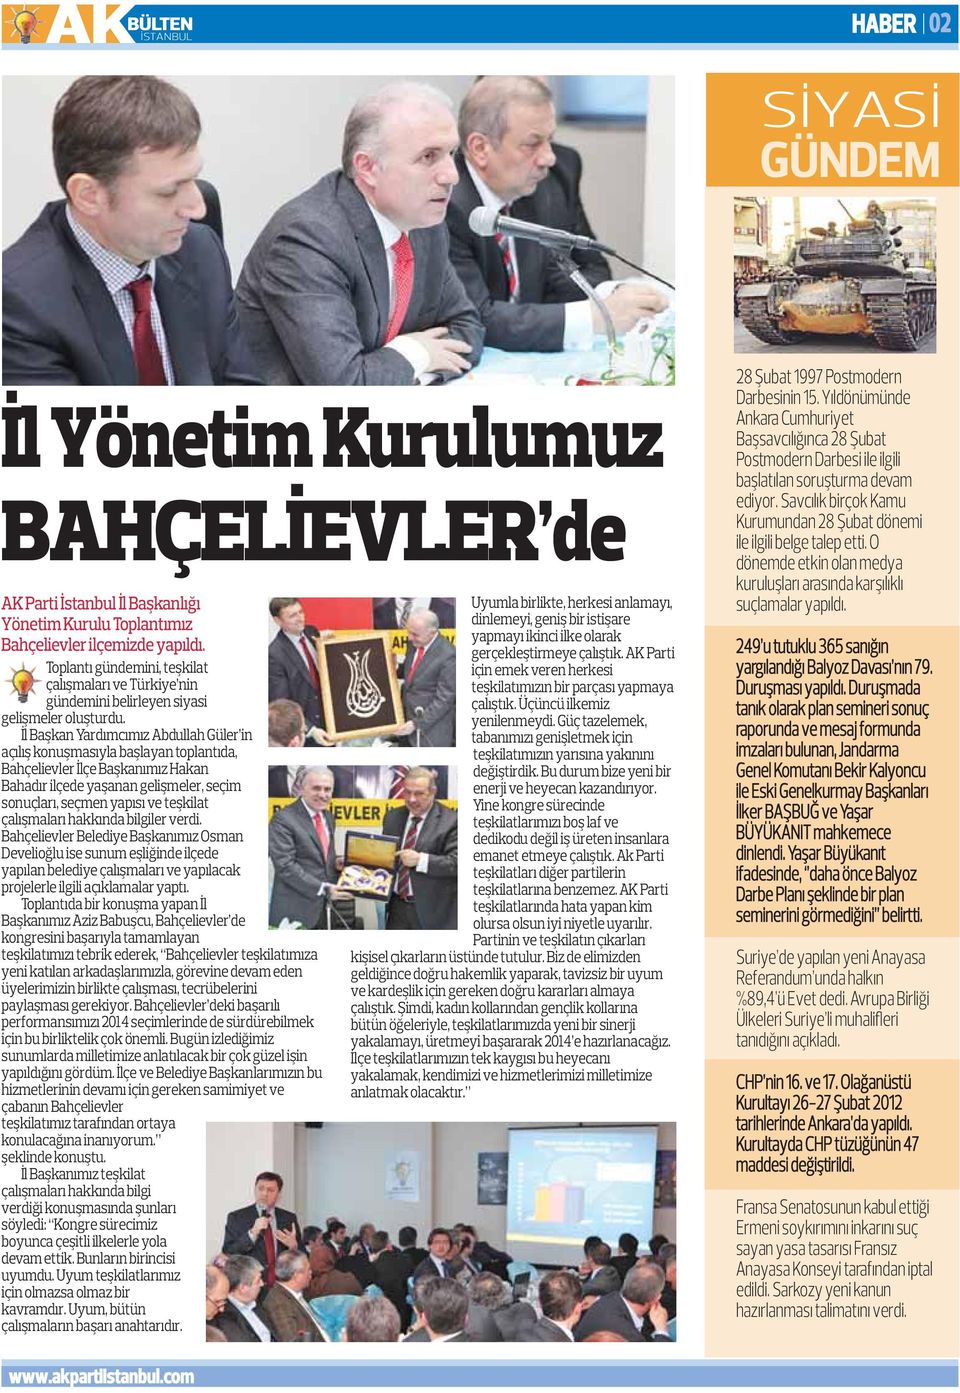 İl Başkan Yardımcımız Abdullah Güler in açılış konuşmasıyla başlayan toplantıda, Bahçelievler İlçe Başkanımız Hakan Bahadır ilçede yaşanan gelişmeler, seçim sonuçları, seçmen yapısı ve teşkilat